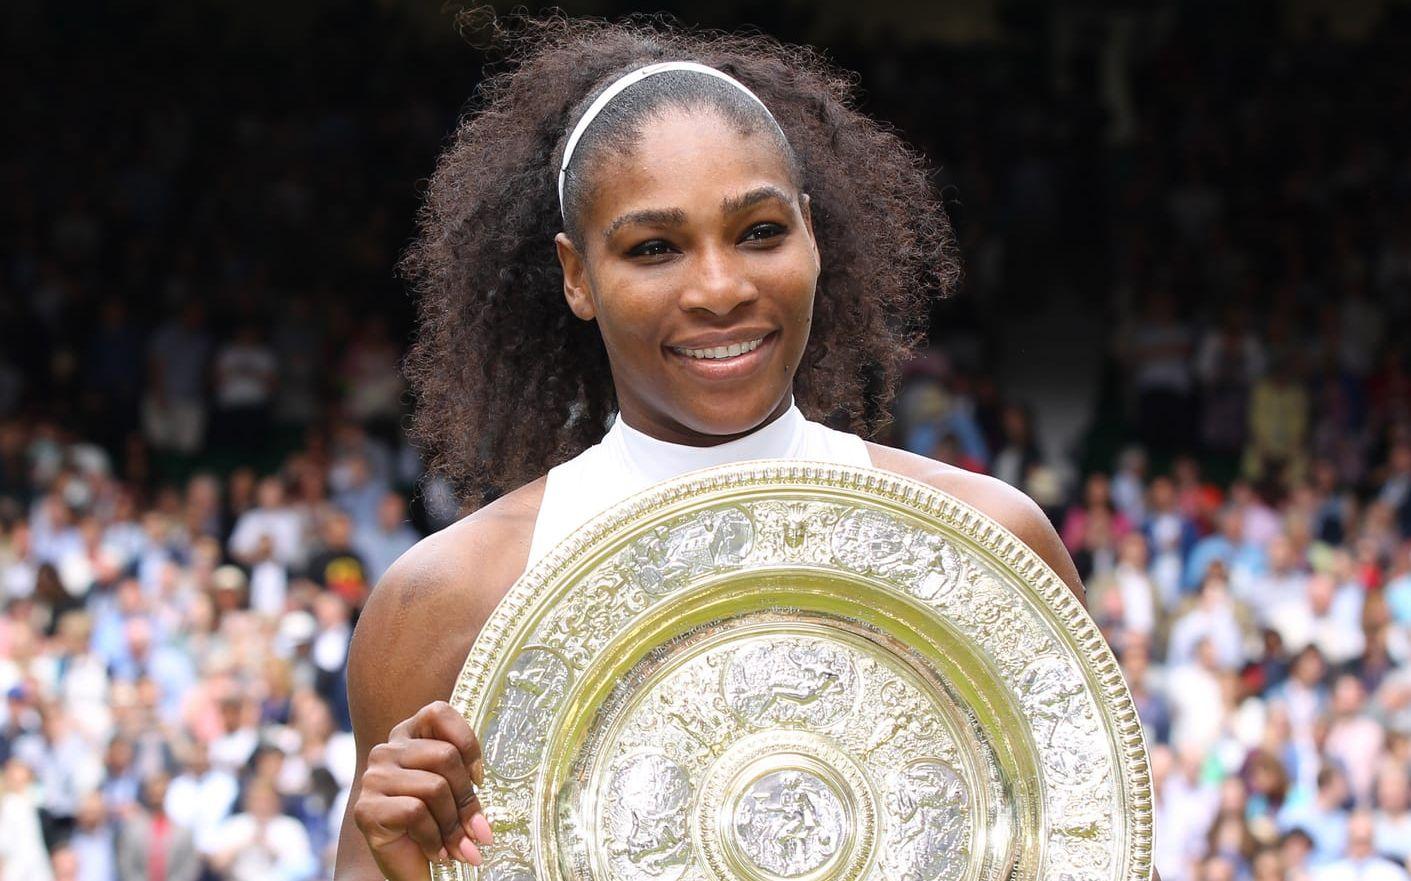 Hon har vunnit 23 Grand Slam under karriären, vilket är näst flest genom alla tider.